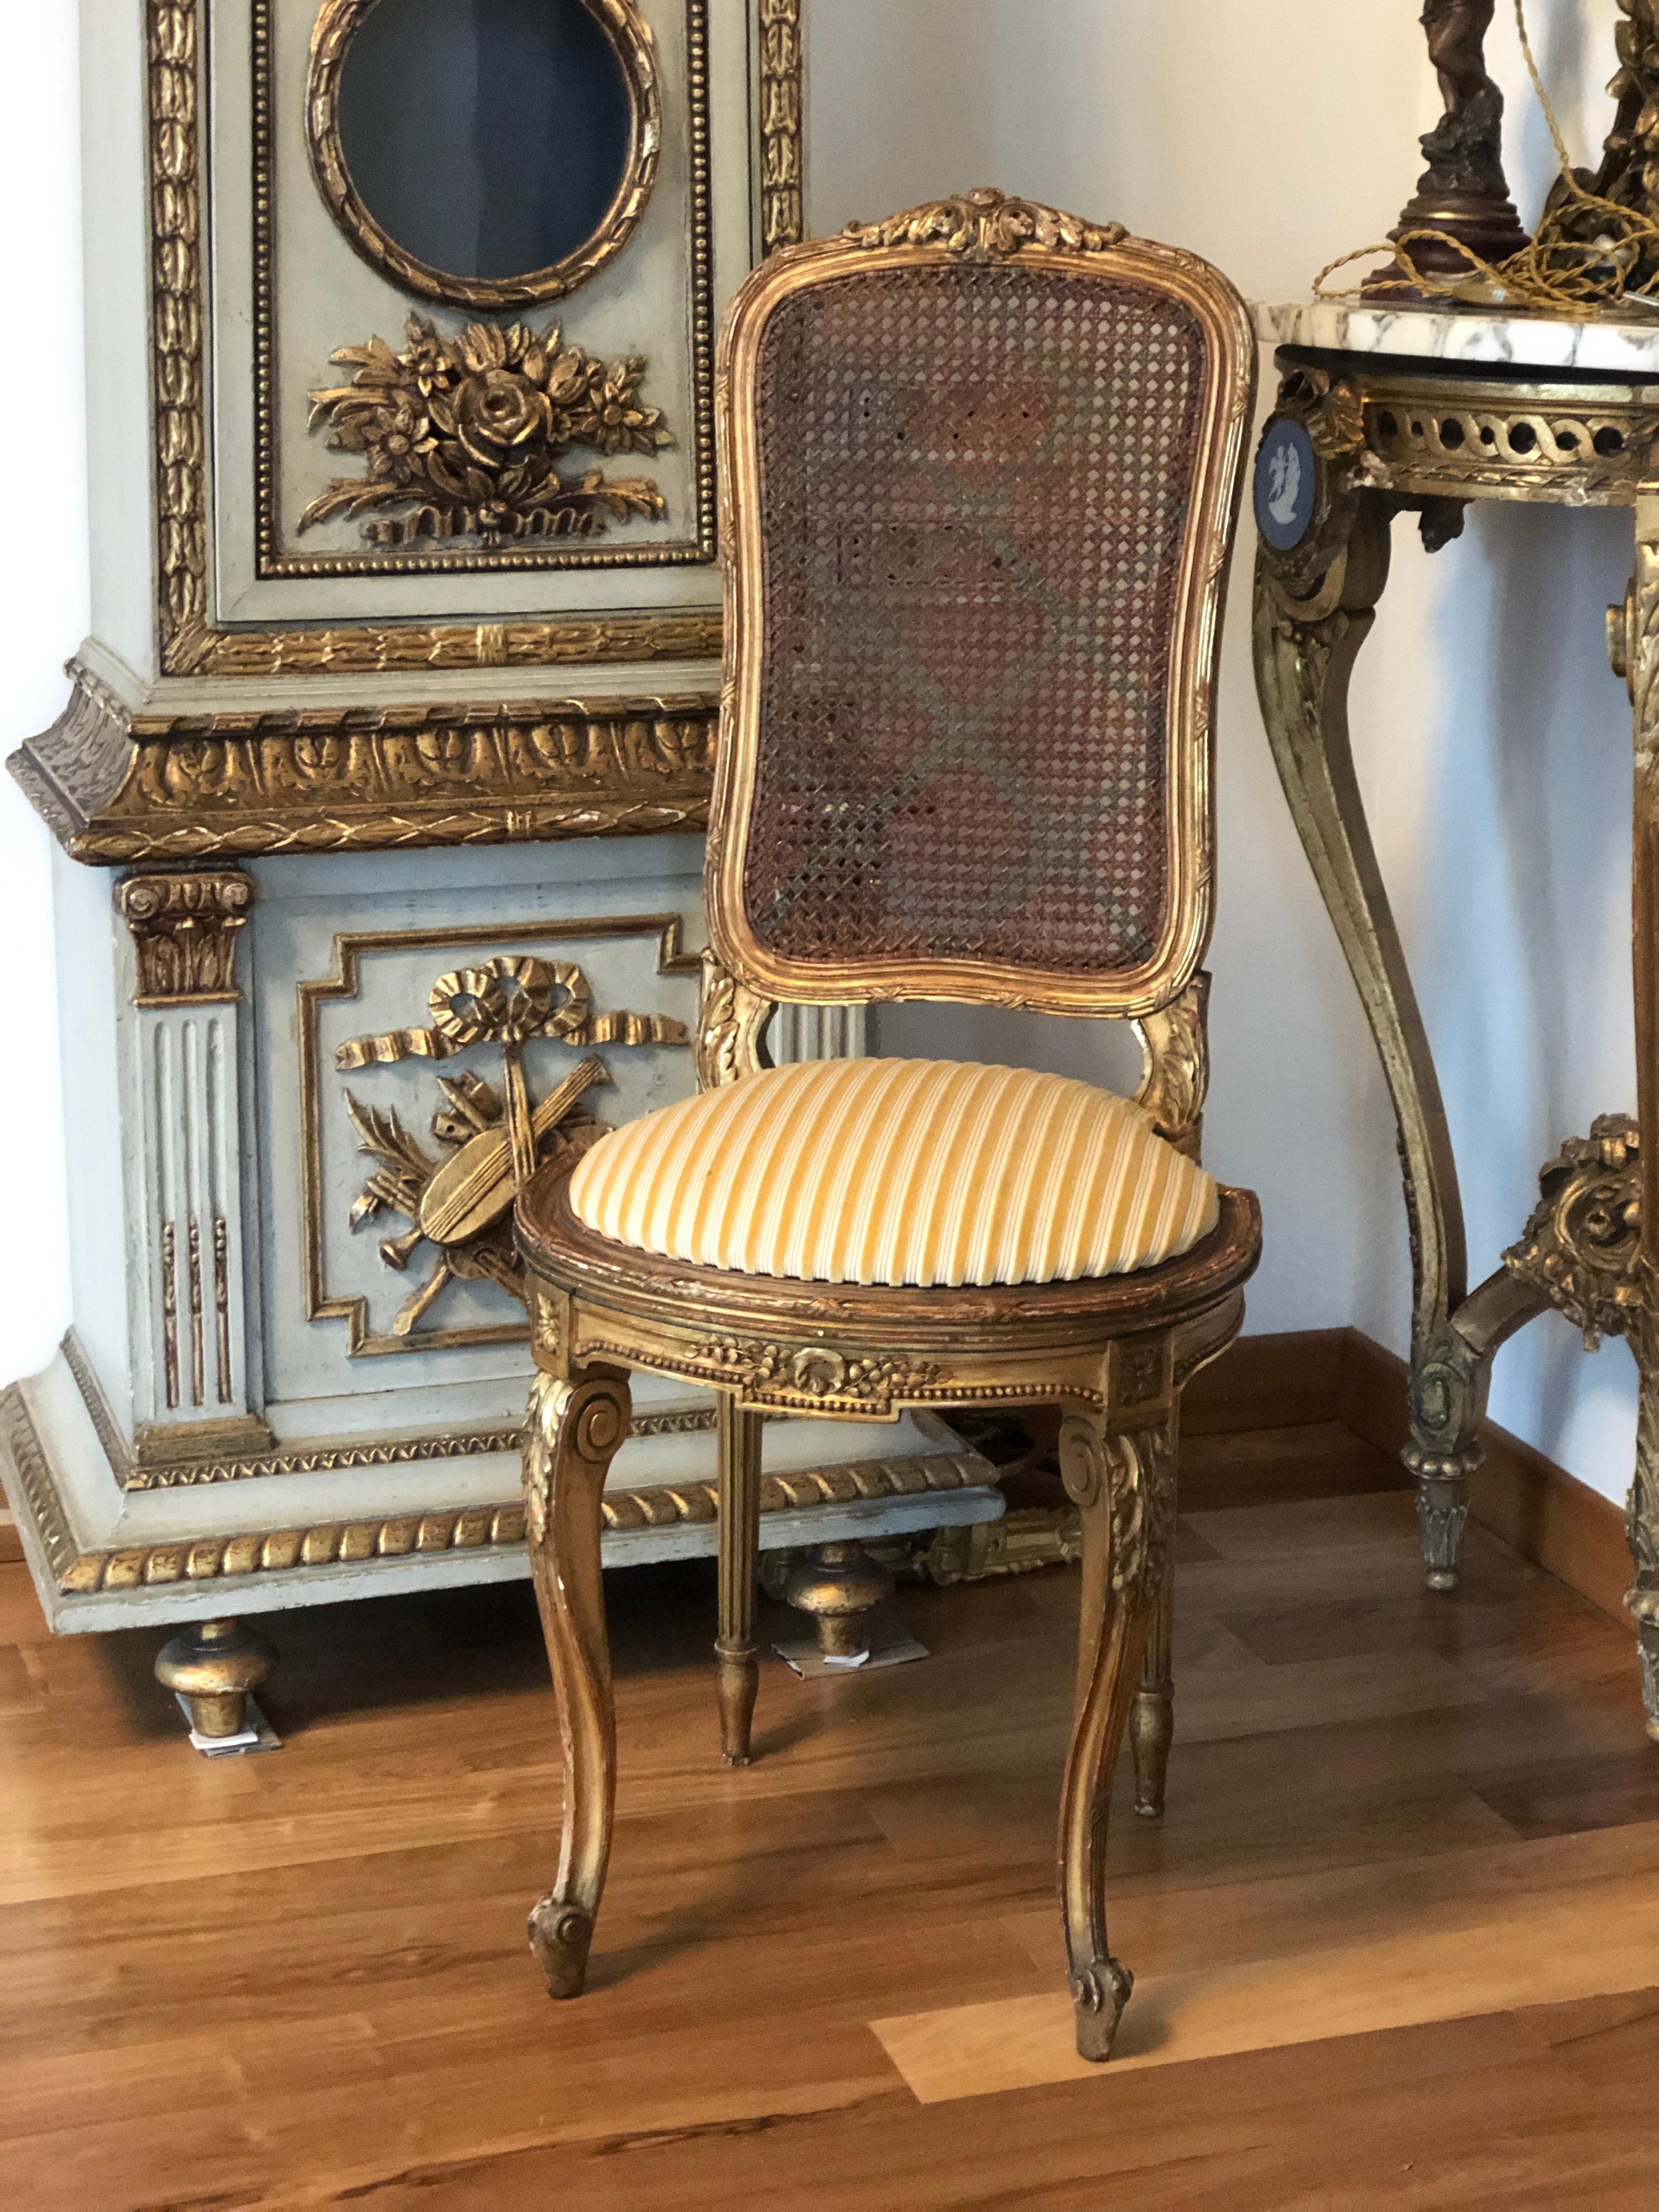 Kleiner französischer Ballsaal-Sessel im Louis XVI-Stil mit vergoldetem Rahmen und geschnitzten Blumenornamenten. Die vorderen Beine sind geschwungen und der Sitz ist vorne halbrund und hat ein Kissen aus senfgelben Samtstreifen. Die Rückenlehne und